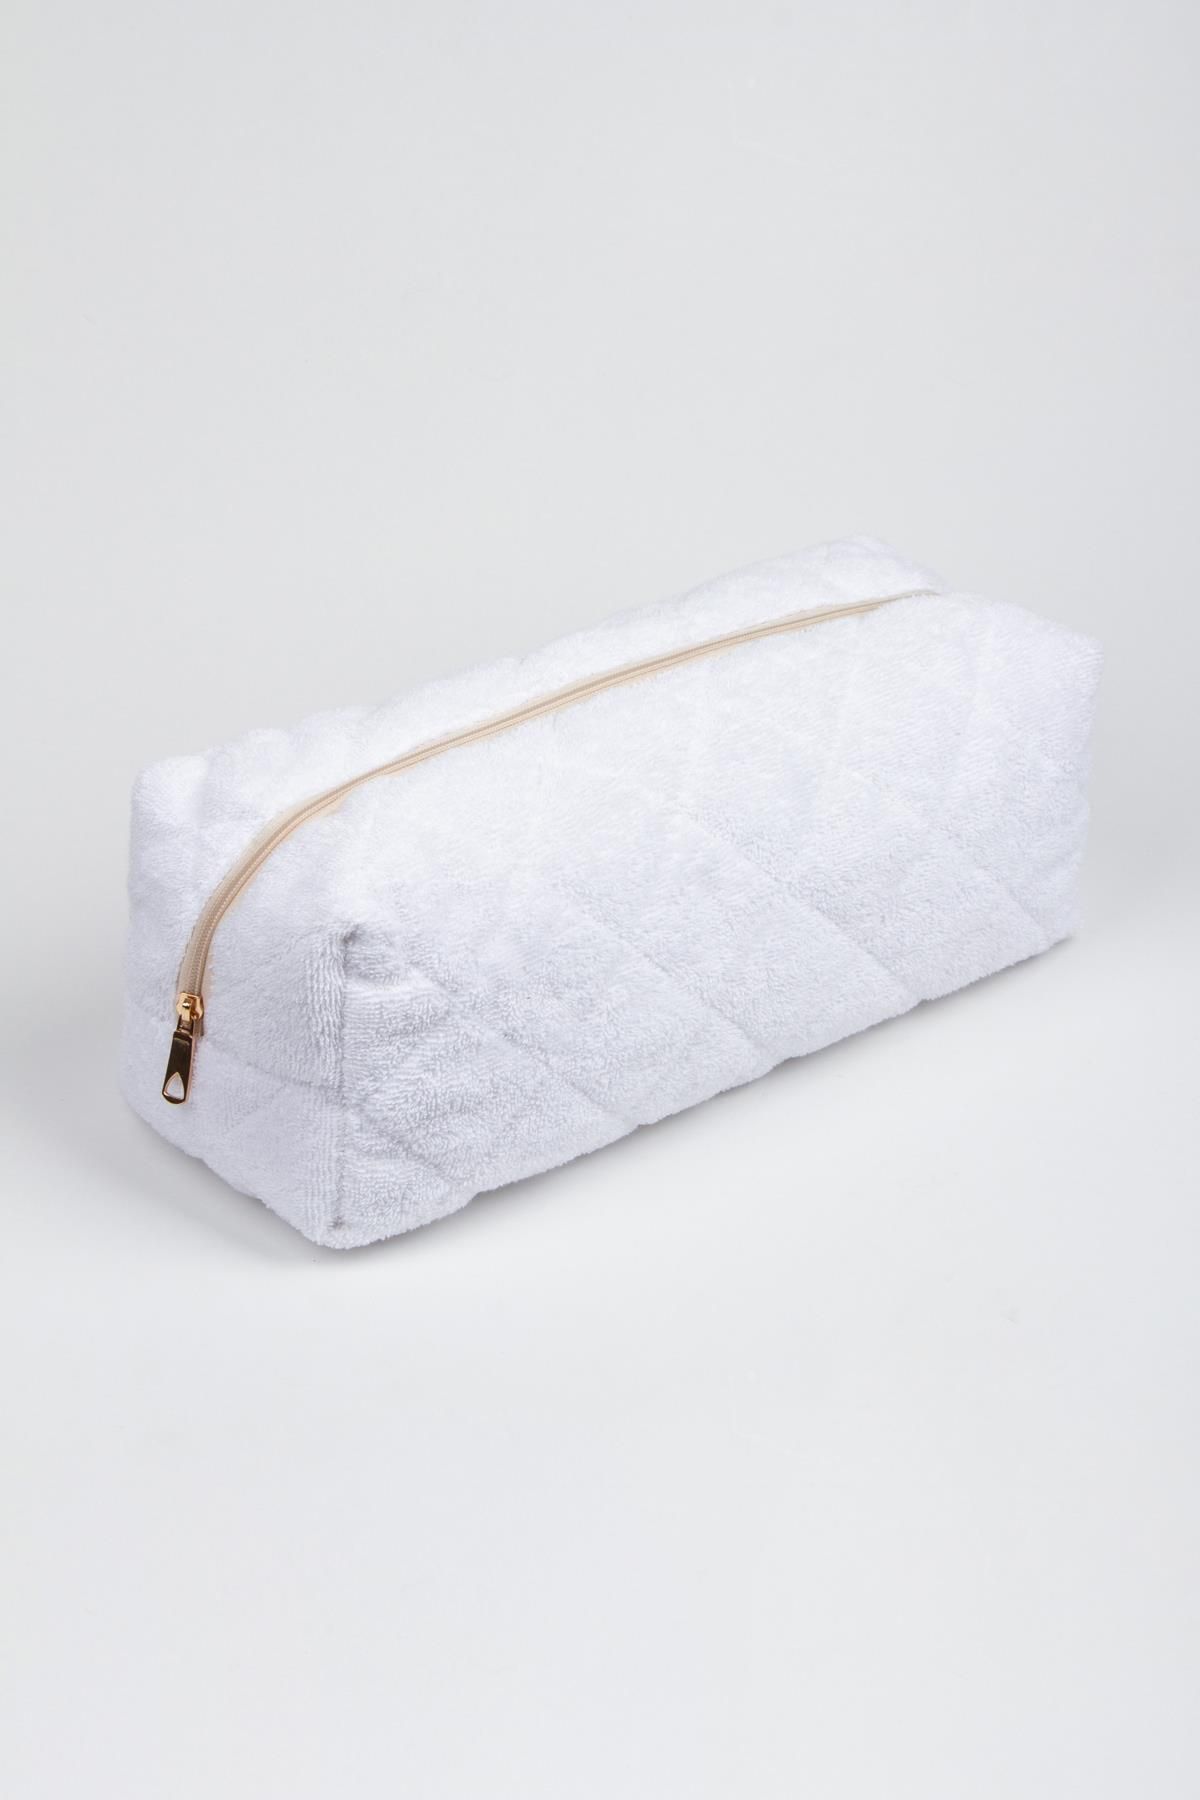 BAHELS Beyaz Havlu Dyson Airwrap ve Tüm Saç Şekillendiriniz için XL Boy Çanta Seyahat Çantası